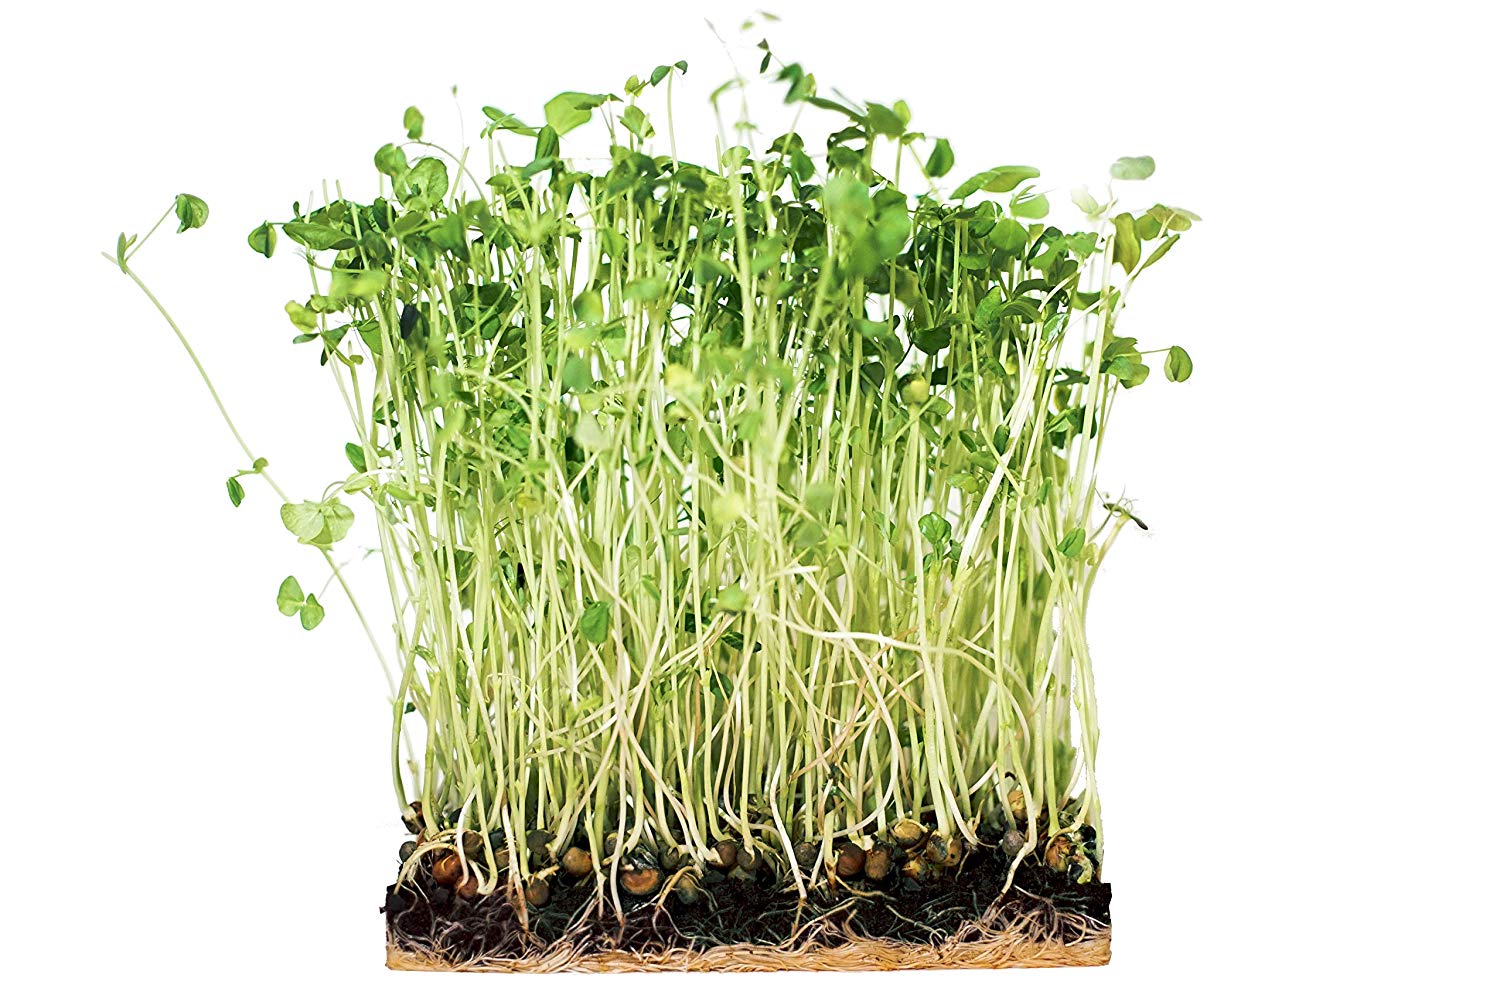 Grow Your Own Microgreens Salad Mix Kit - Urban Minimalist